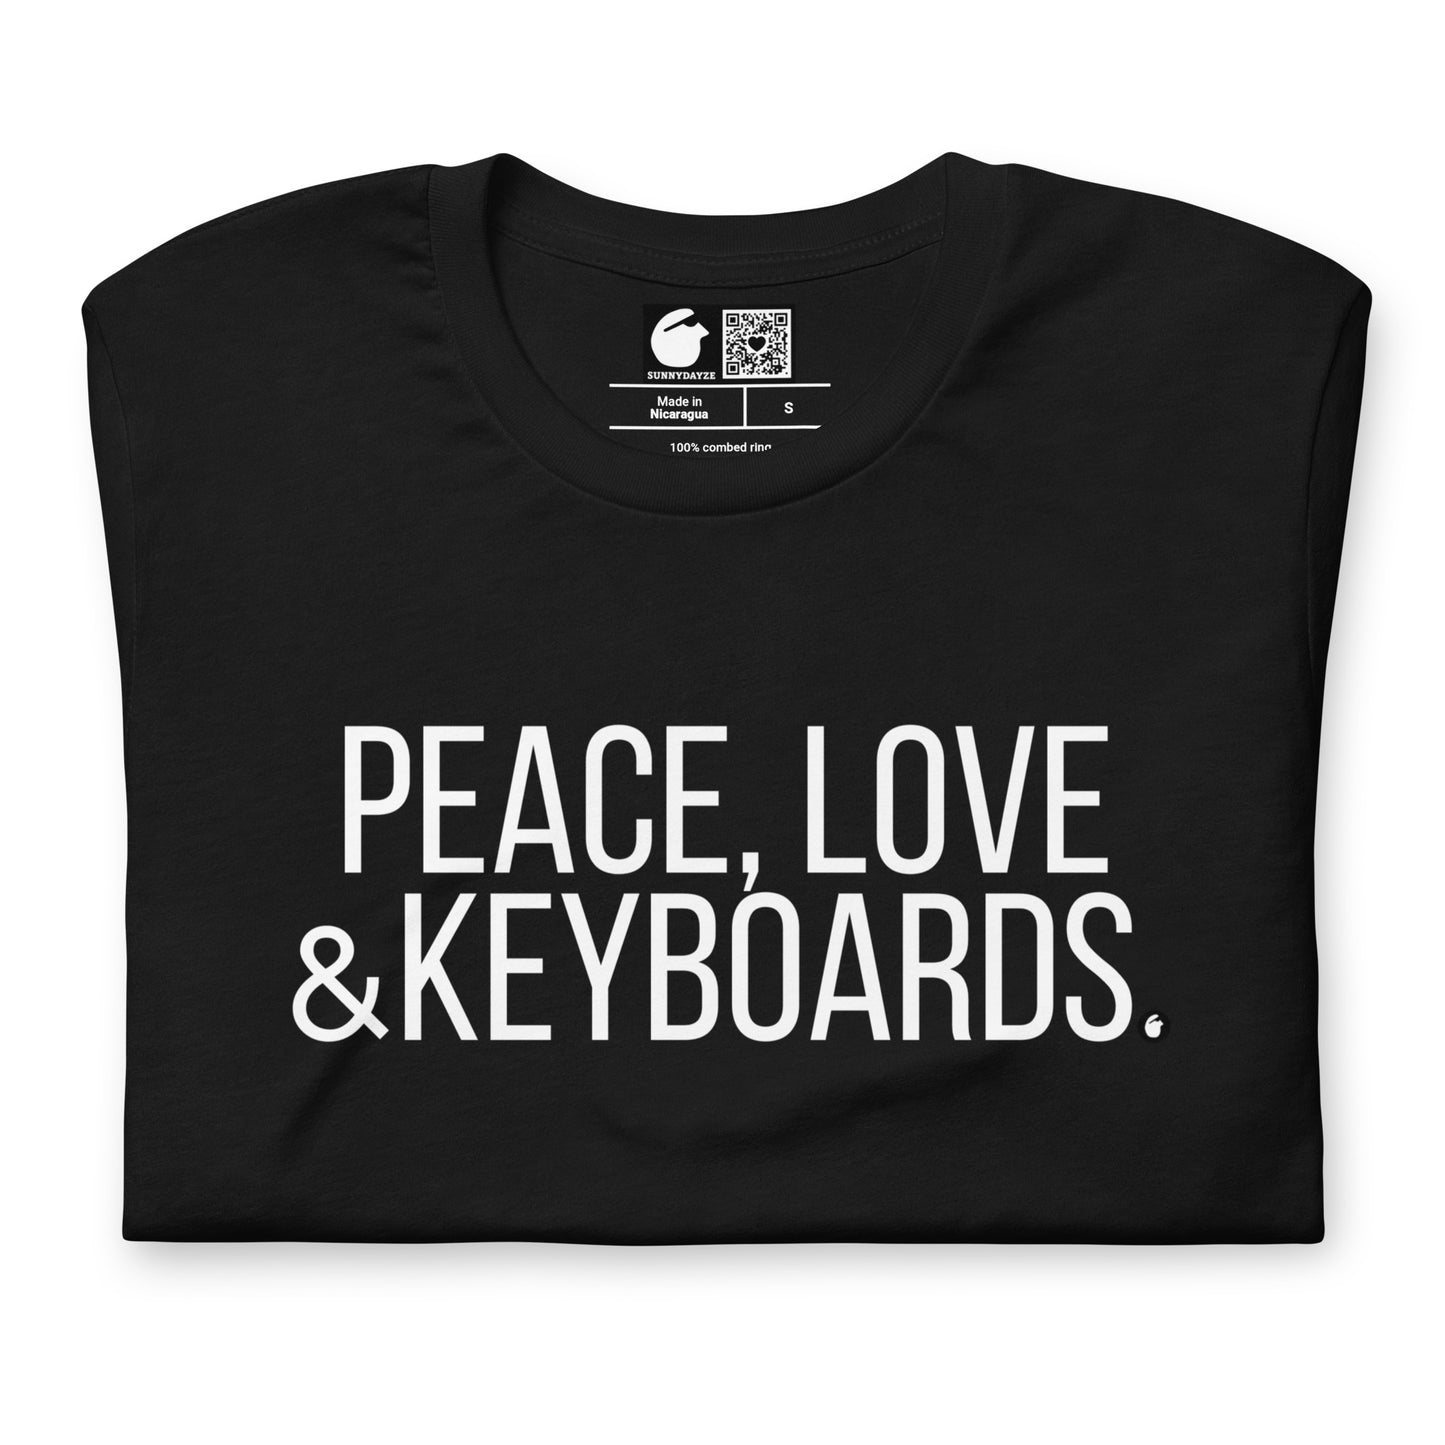 KEYBOARDS Short-Sleeve Unisex t-shirt